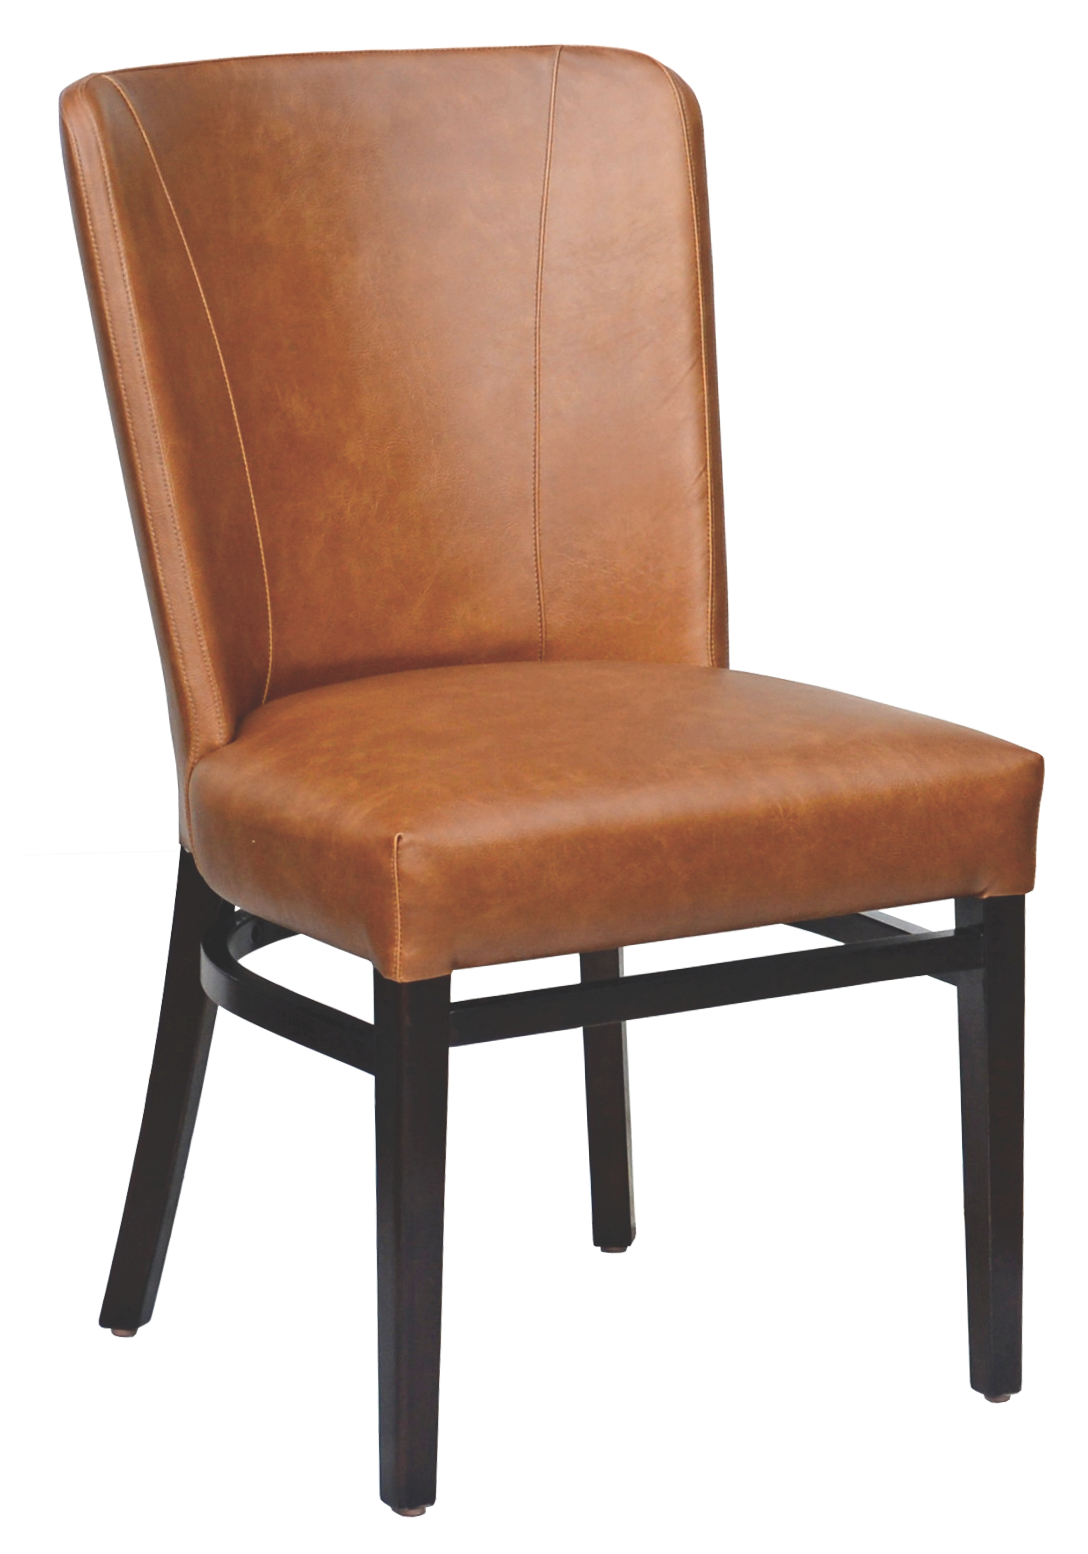 6646-eagle-chair-inc